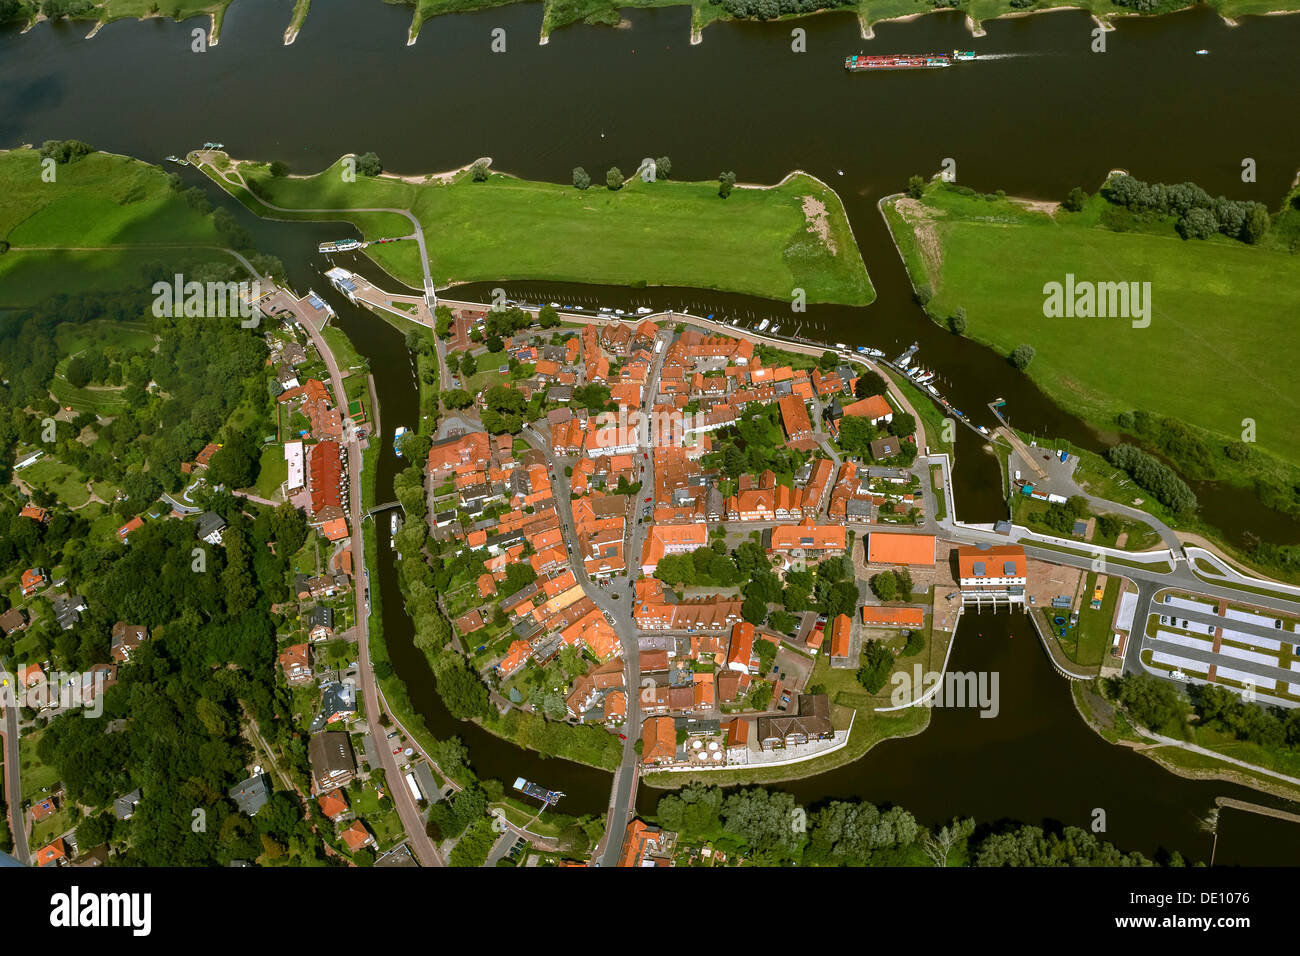 Vista aerea, la città vecchia di Hitzacker con torrenti tributari Jeetzel e Altjeetzel, Fiume Elba Foto Stock